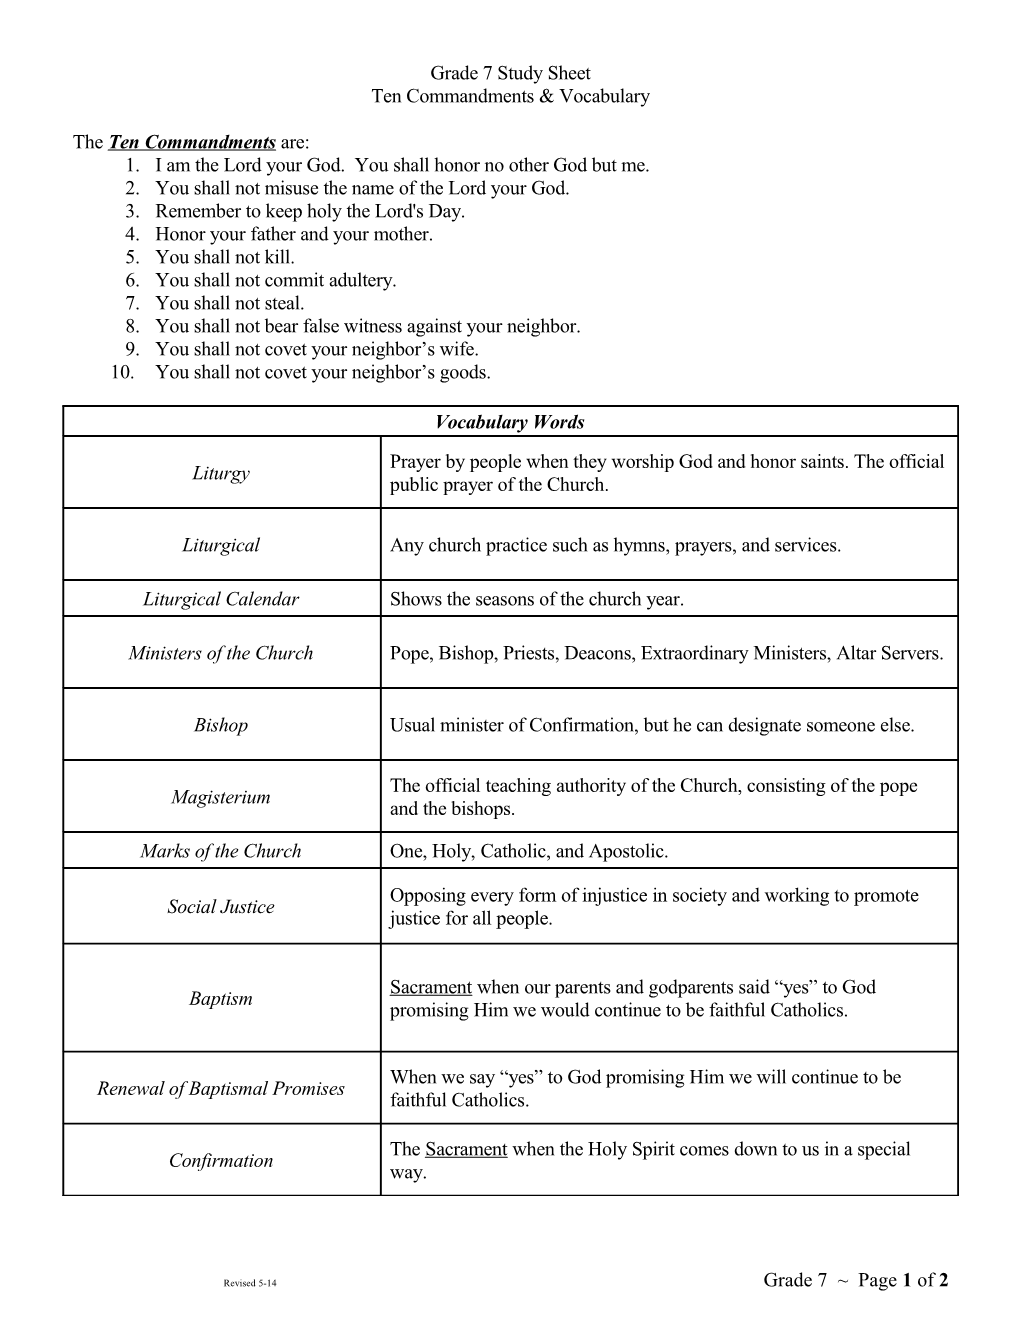 Grade 7 Study Sheet for Ten Commandments